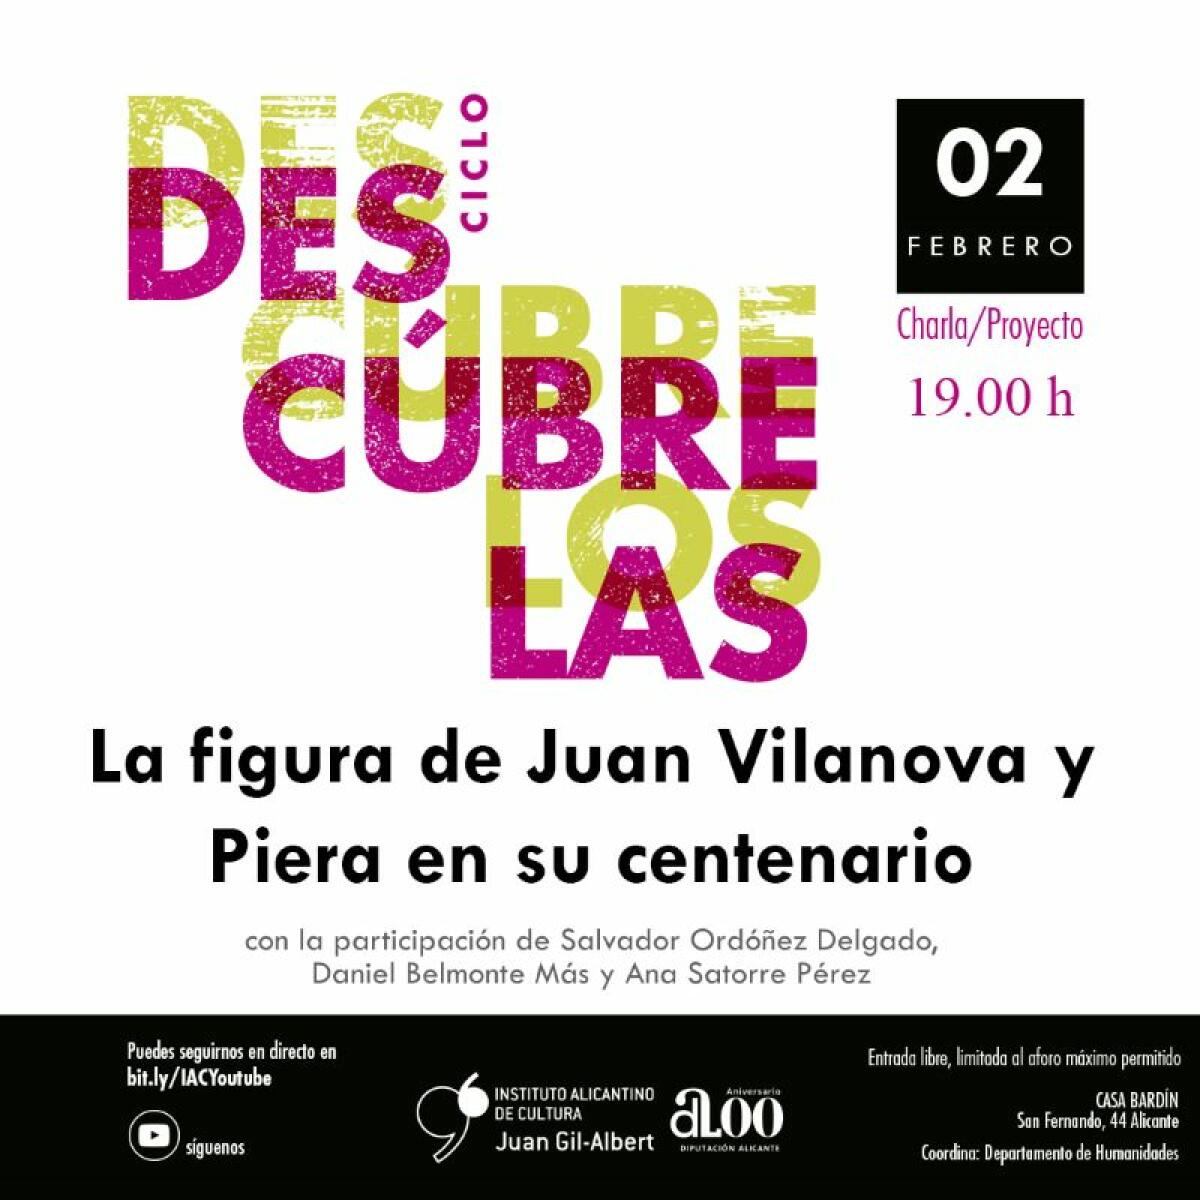 El Instituto de Cultura Juan Gil-Albert recupera la figura y el trabajo del insigne naturalista Juan Vilanova y Piera  